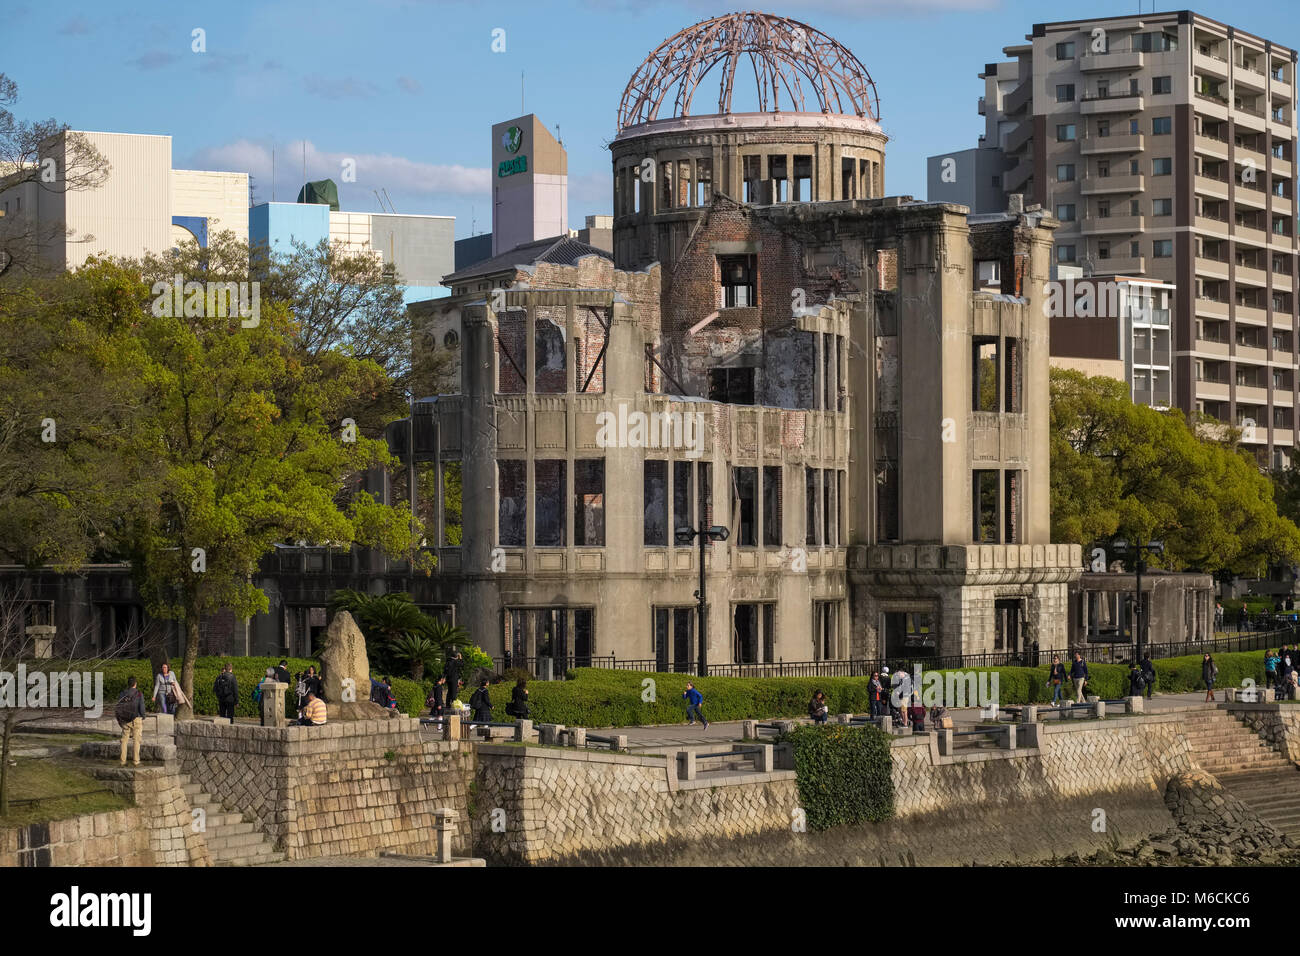 La bombe atomique d'Hiroshima (Dôme de Genbaku Domu), dans le parc de la paix, Hiroshima, Japon Banque D'Images